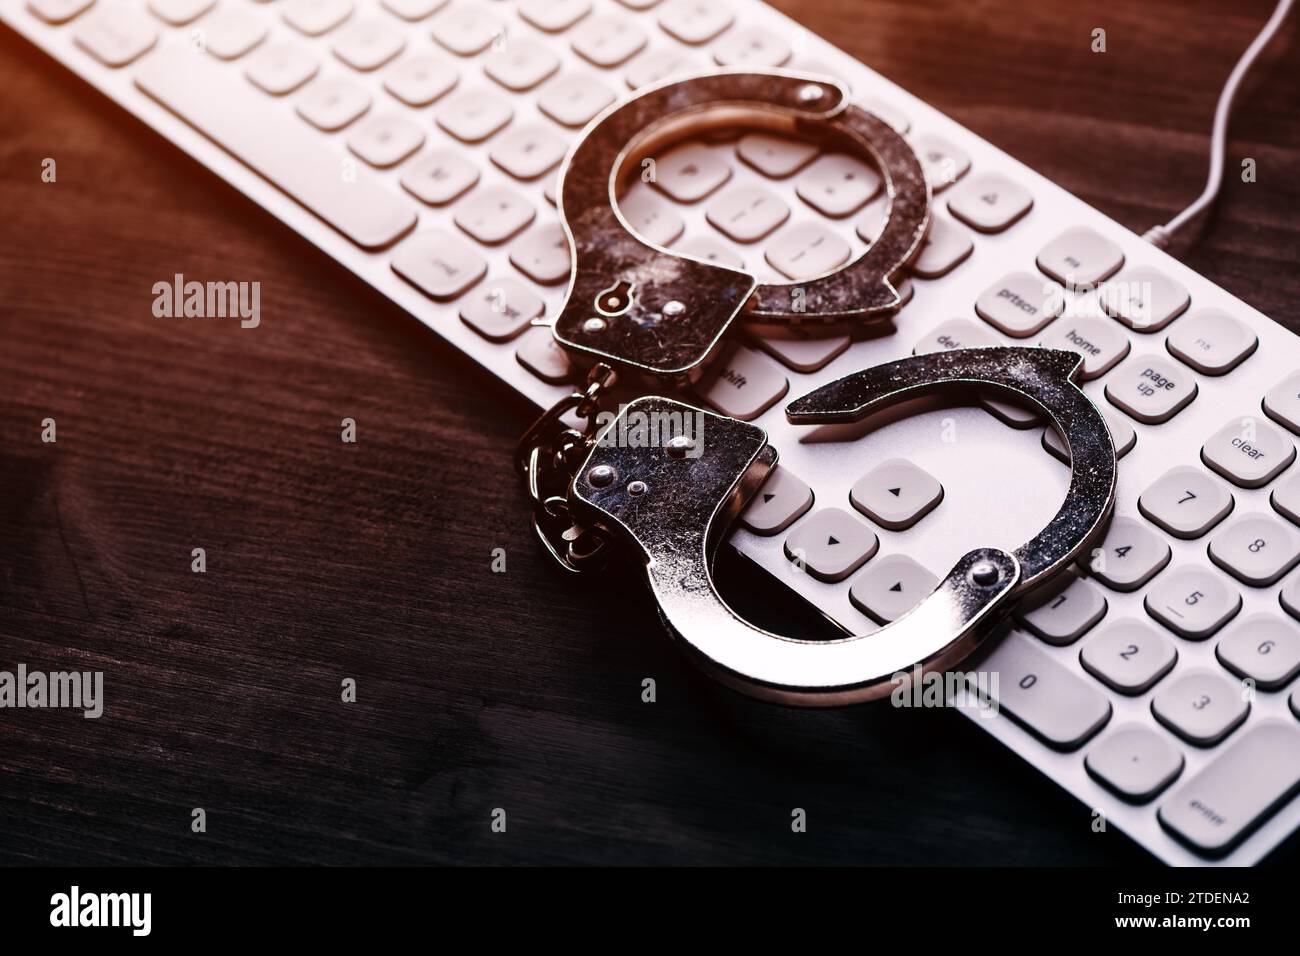 Concept d'arrestation de cybercriminalité INFORMATIQUE DE haute technologie, image de menottes de police sur le clavier d'ordinateur, focalisation sélective Banque D'Images